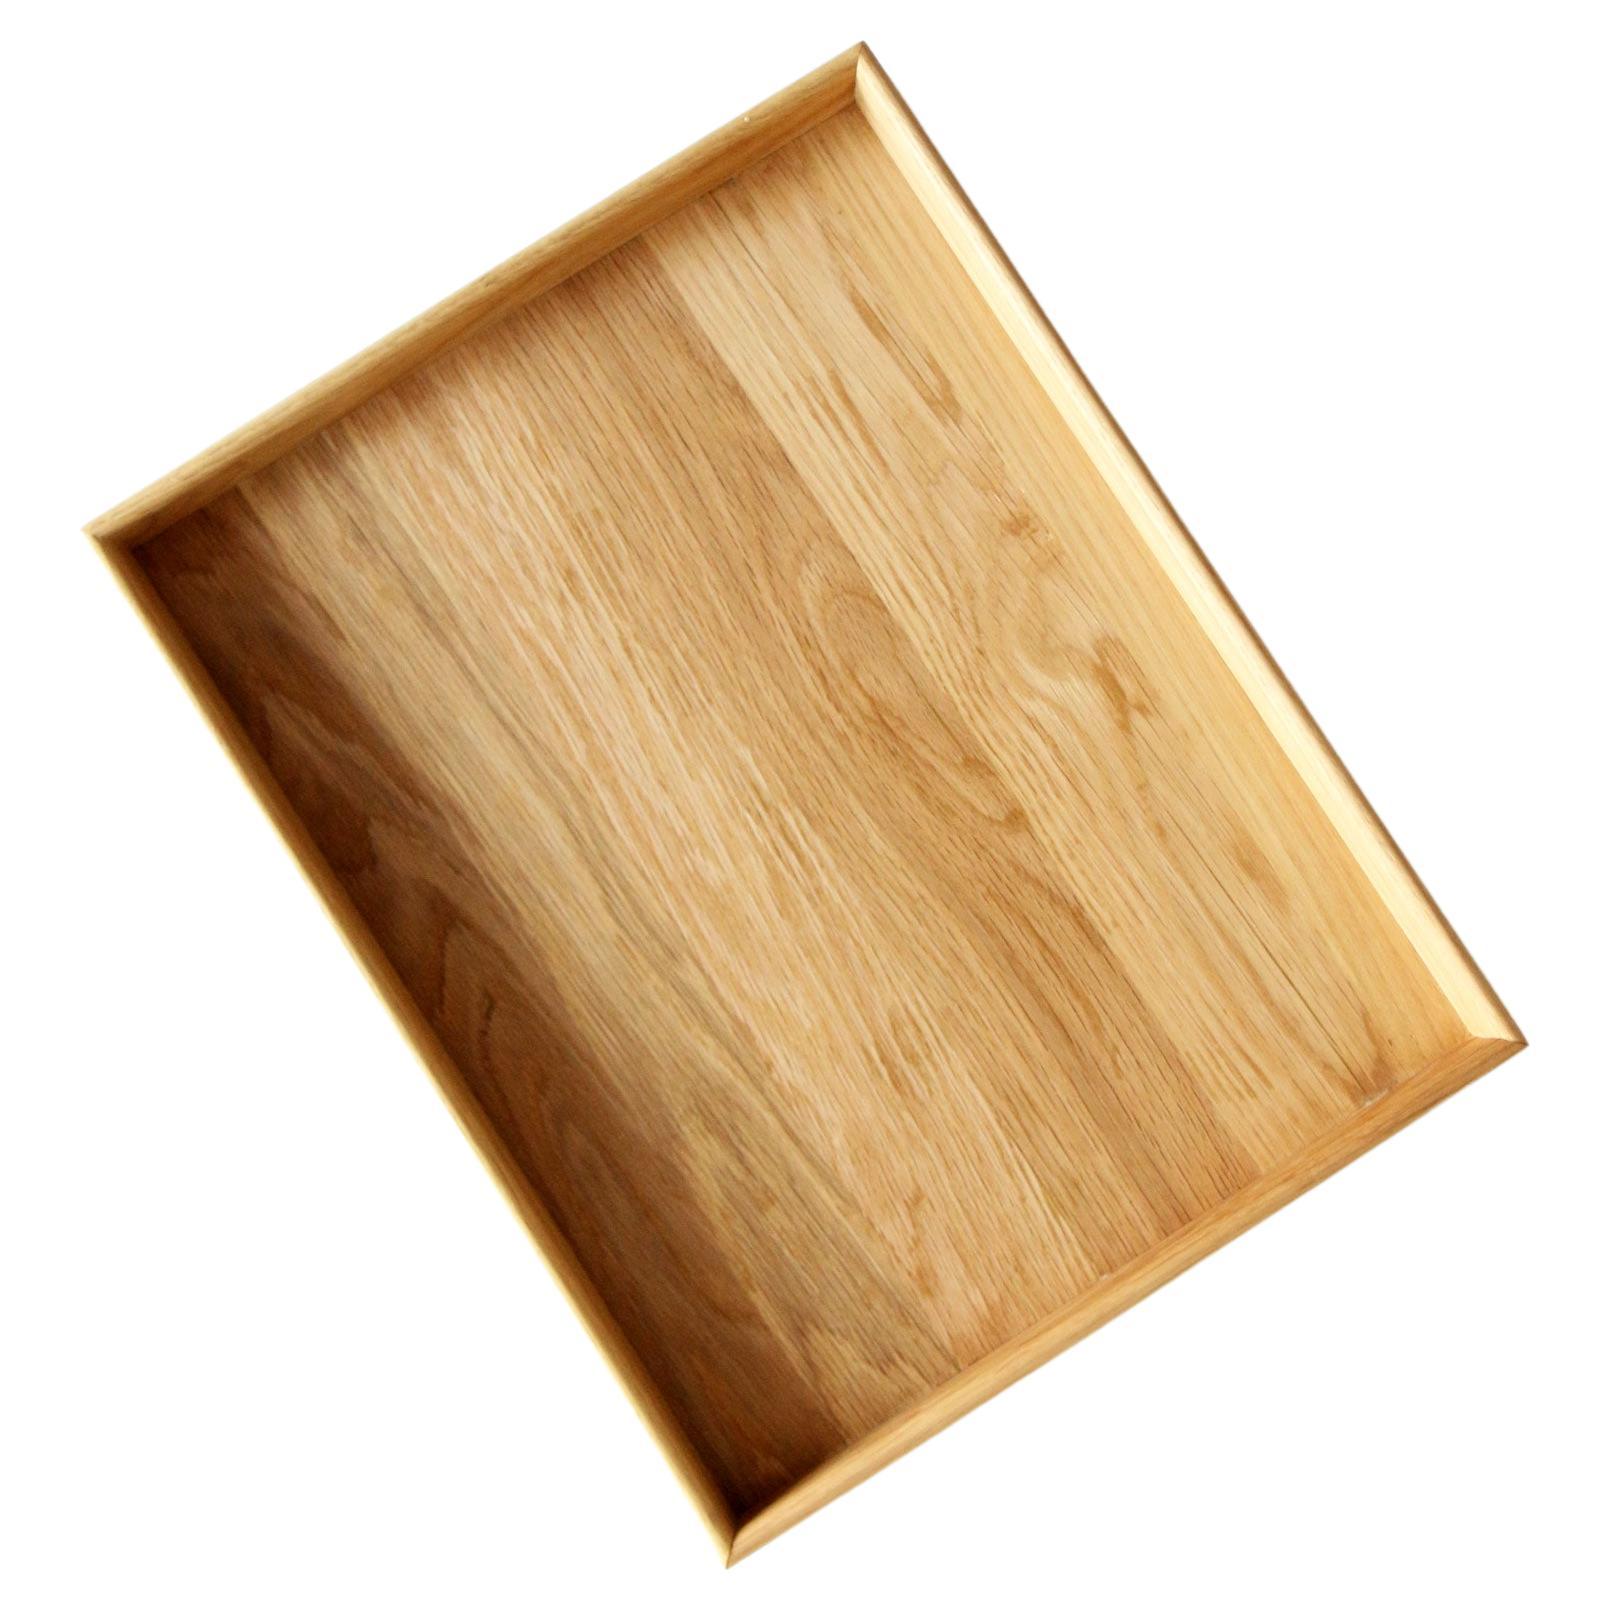 Plateau ottoman rectangulaire en bois de chêne sans poignées 60 x 45 cm